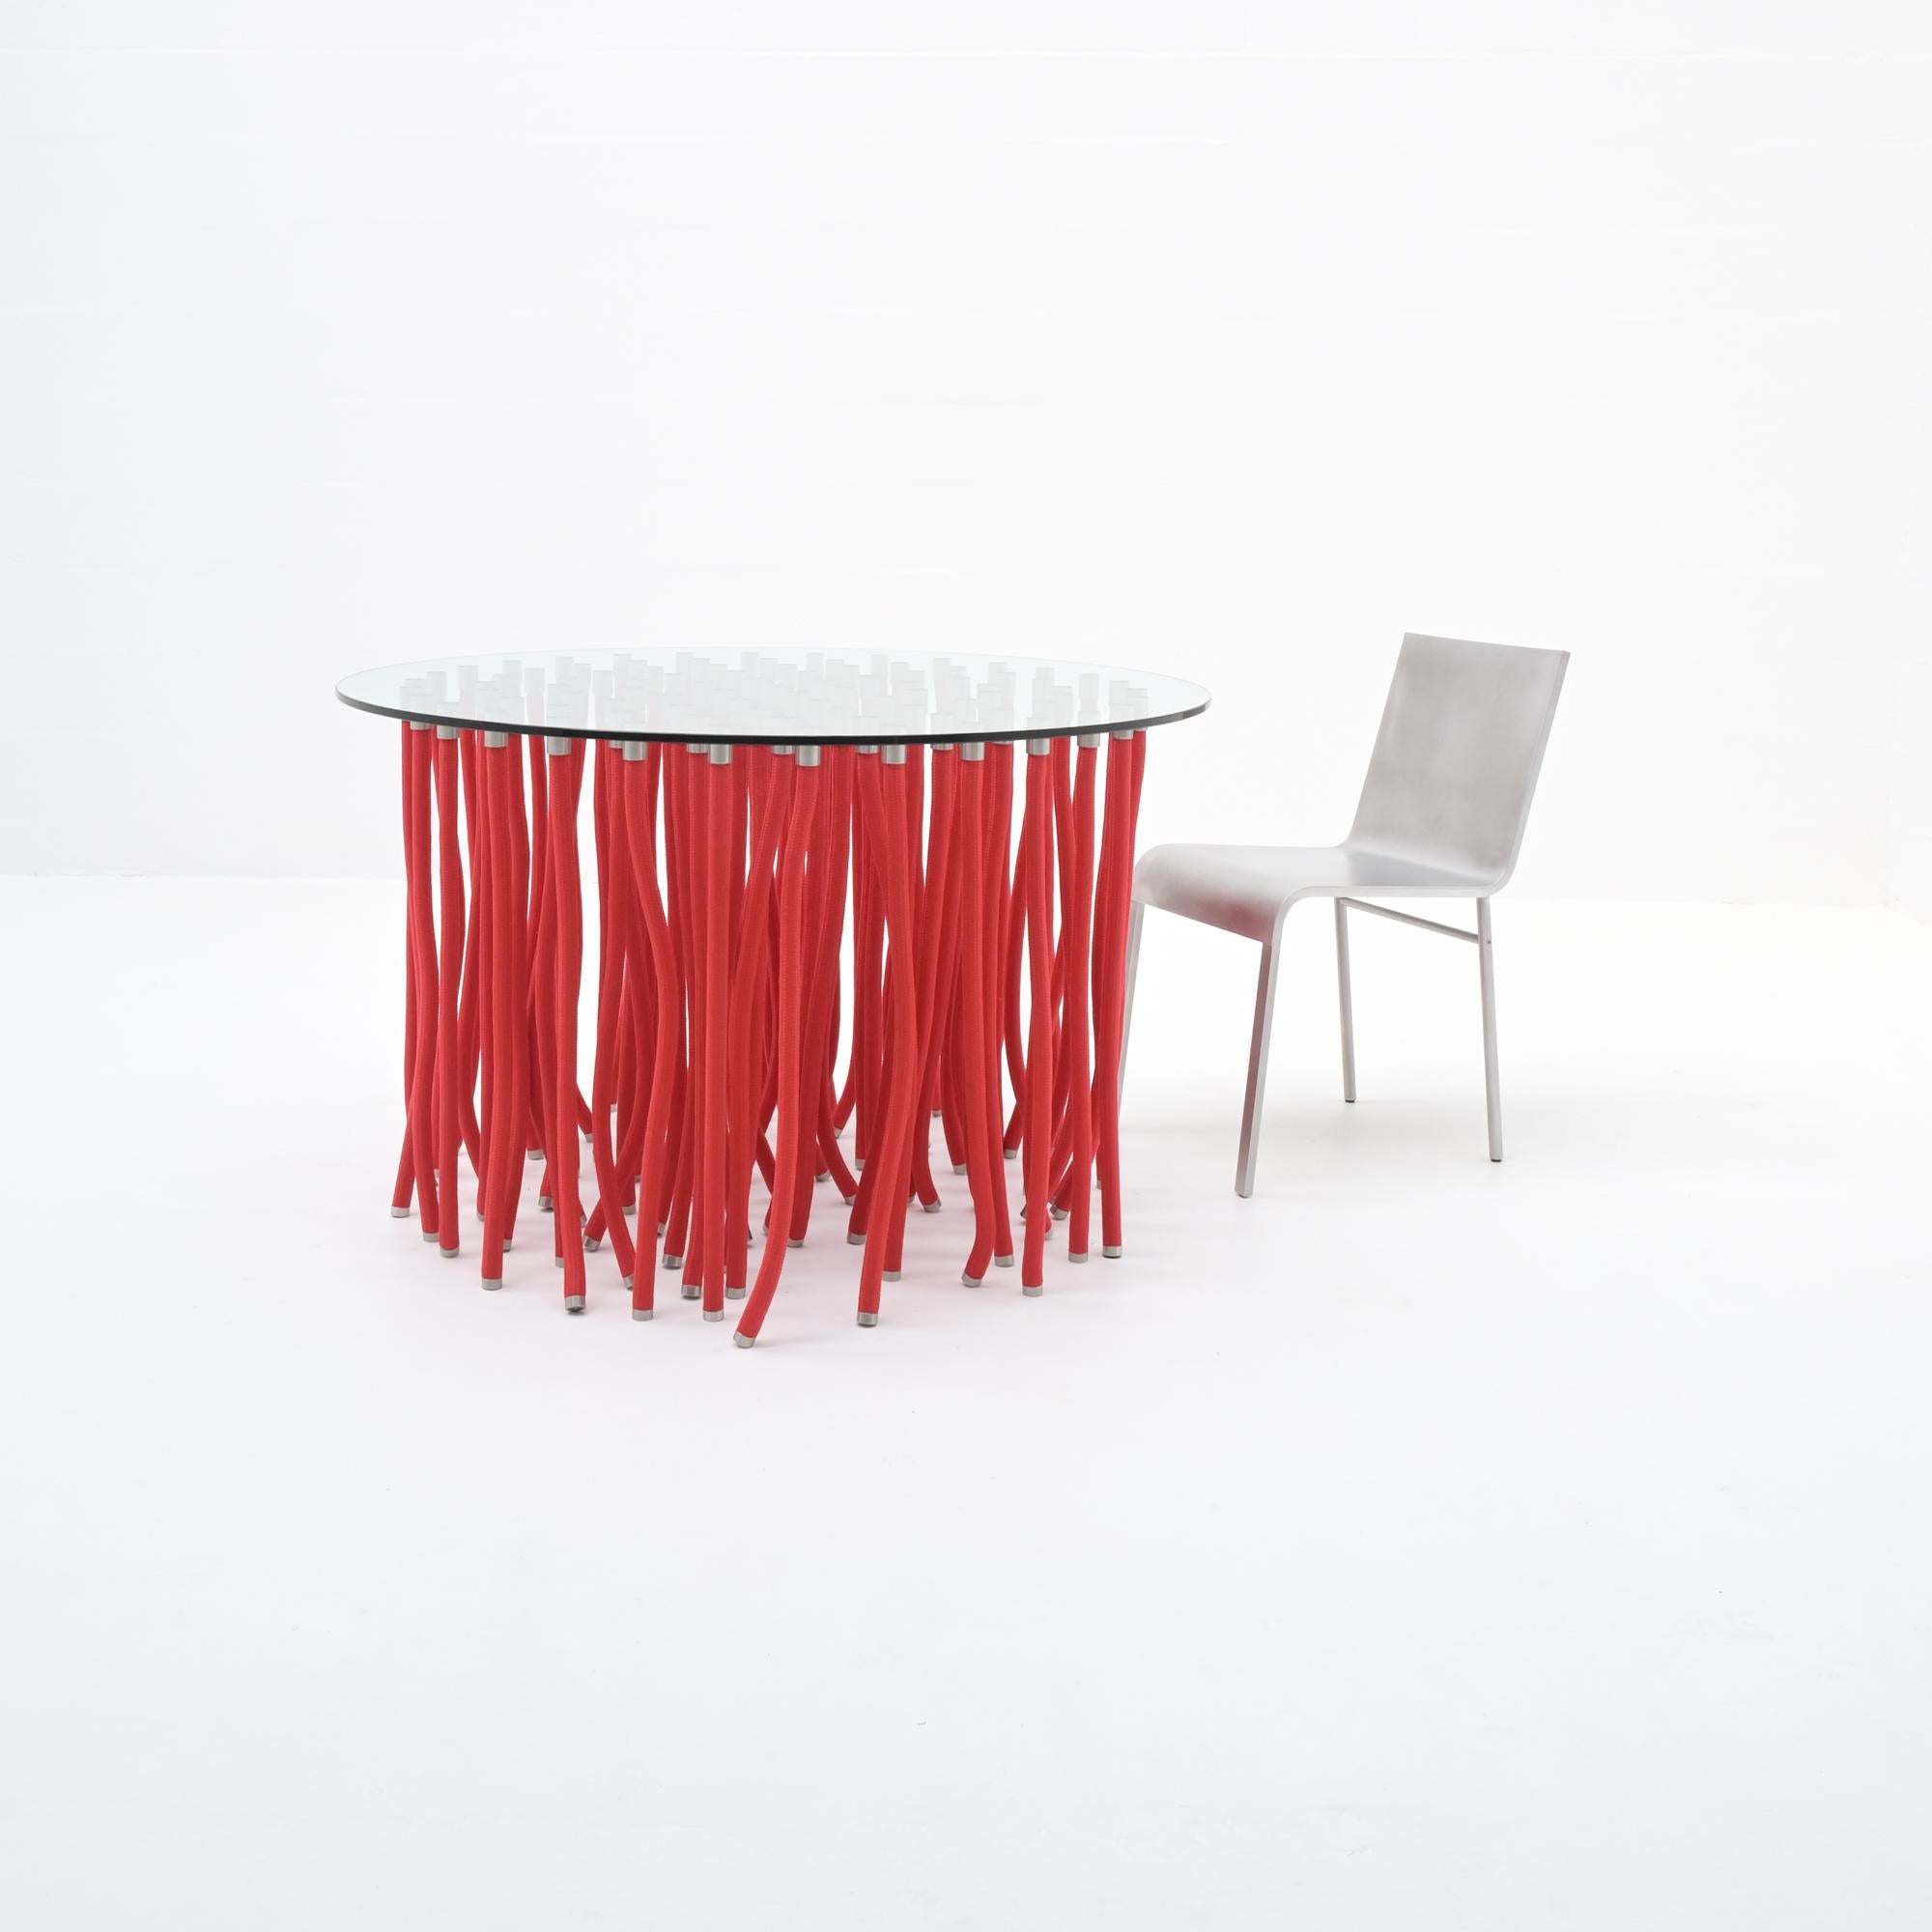 Cette table de salle à manger ORG rouge a été conçue par Fabio Novembre en 2001 pour Cappellini. Cette table étonnante est composée d'un plateau en verre de cristal soutenu par de l'acier recouvert d'une corde en polypropylène avec un raccord